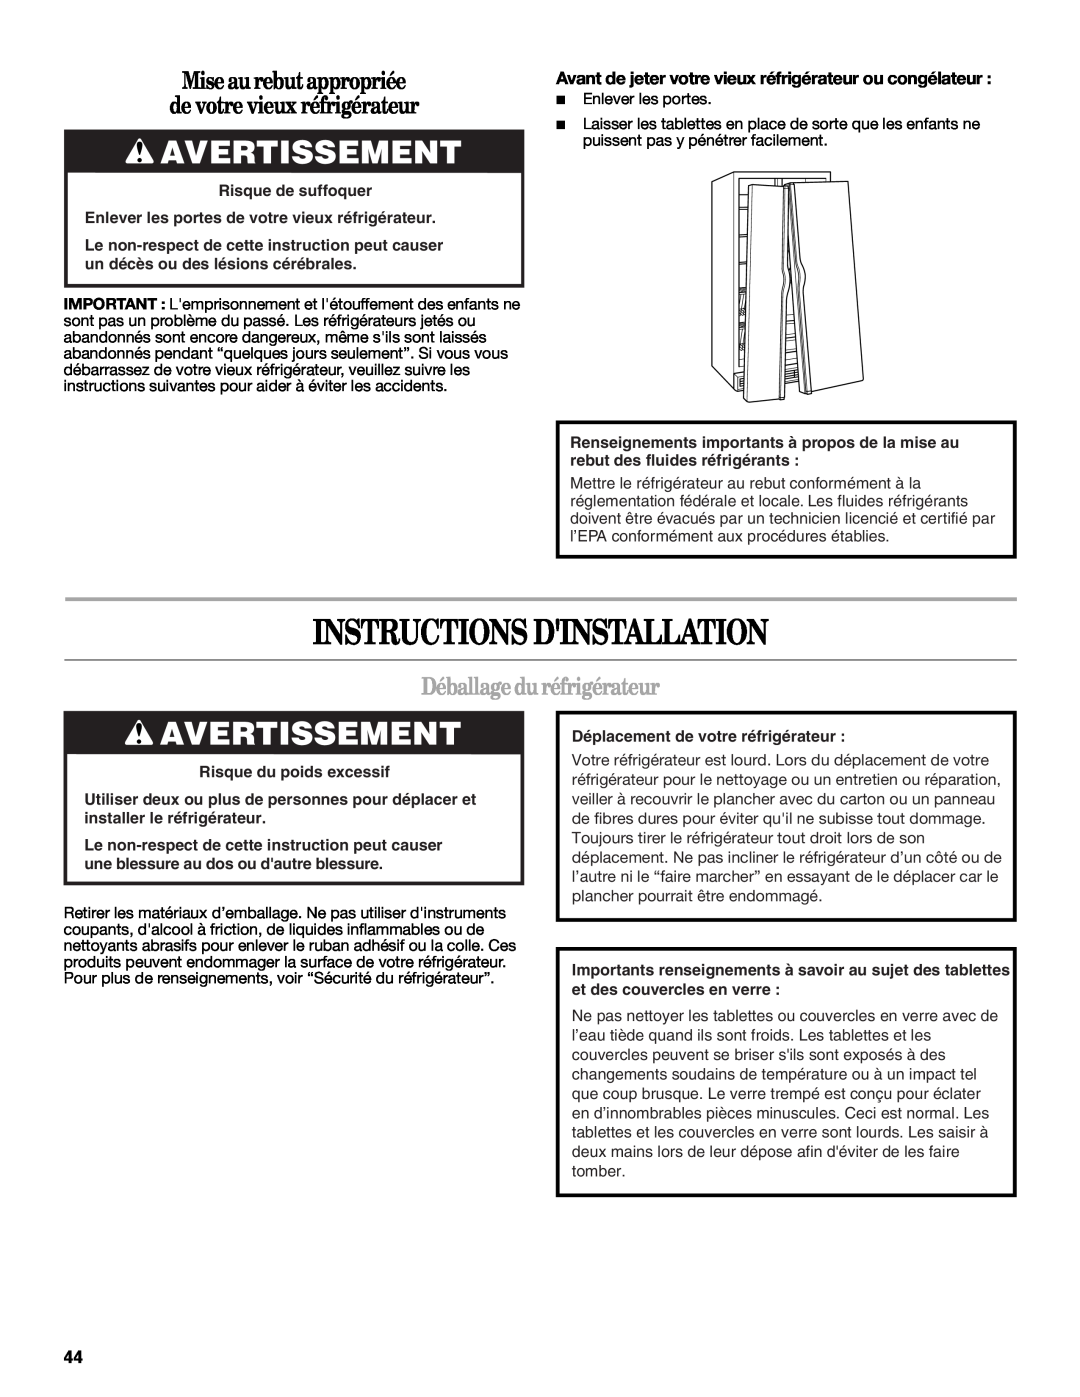 Whirlpool ED2KHAXVT manual Instructions Dinstallation, Avertissement, Mise aurebut appropriée de votre vieux réfrigérateur 